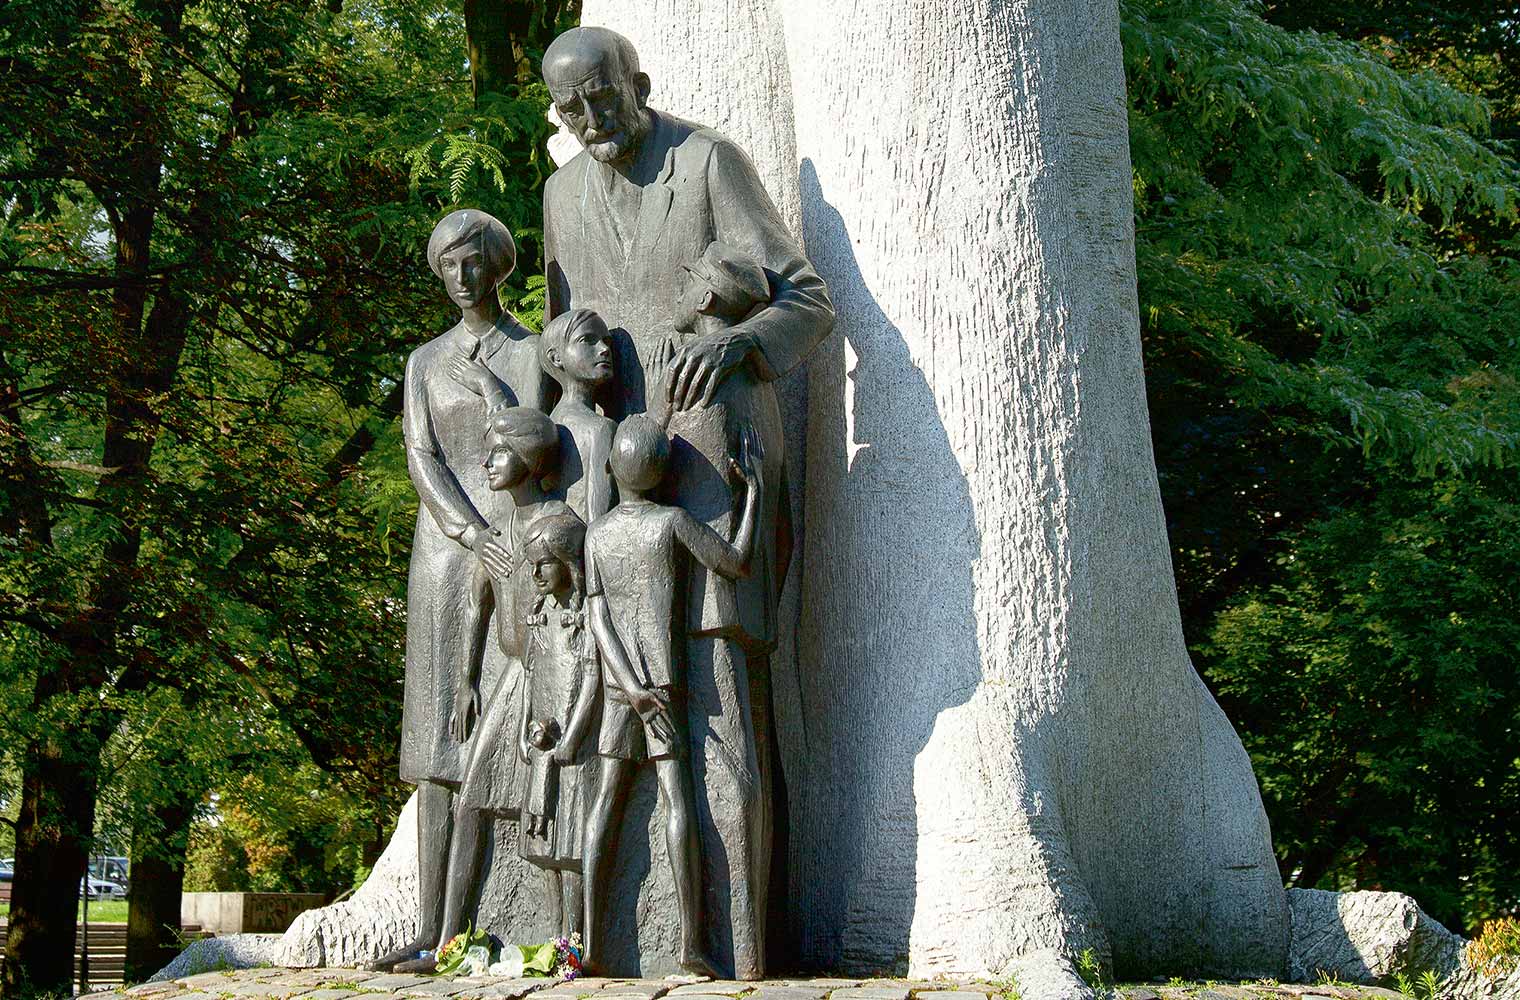  	Das Denkmal zeigt Janusz Korczak. Er steht vor einem großen Baum und hält seine Hände schützend um sechs Kinder unterschiedlichen Alters.